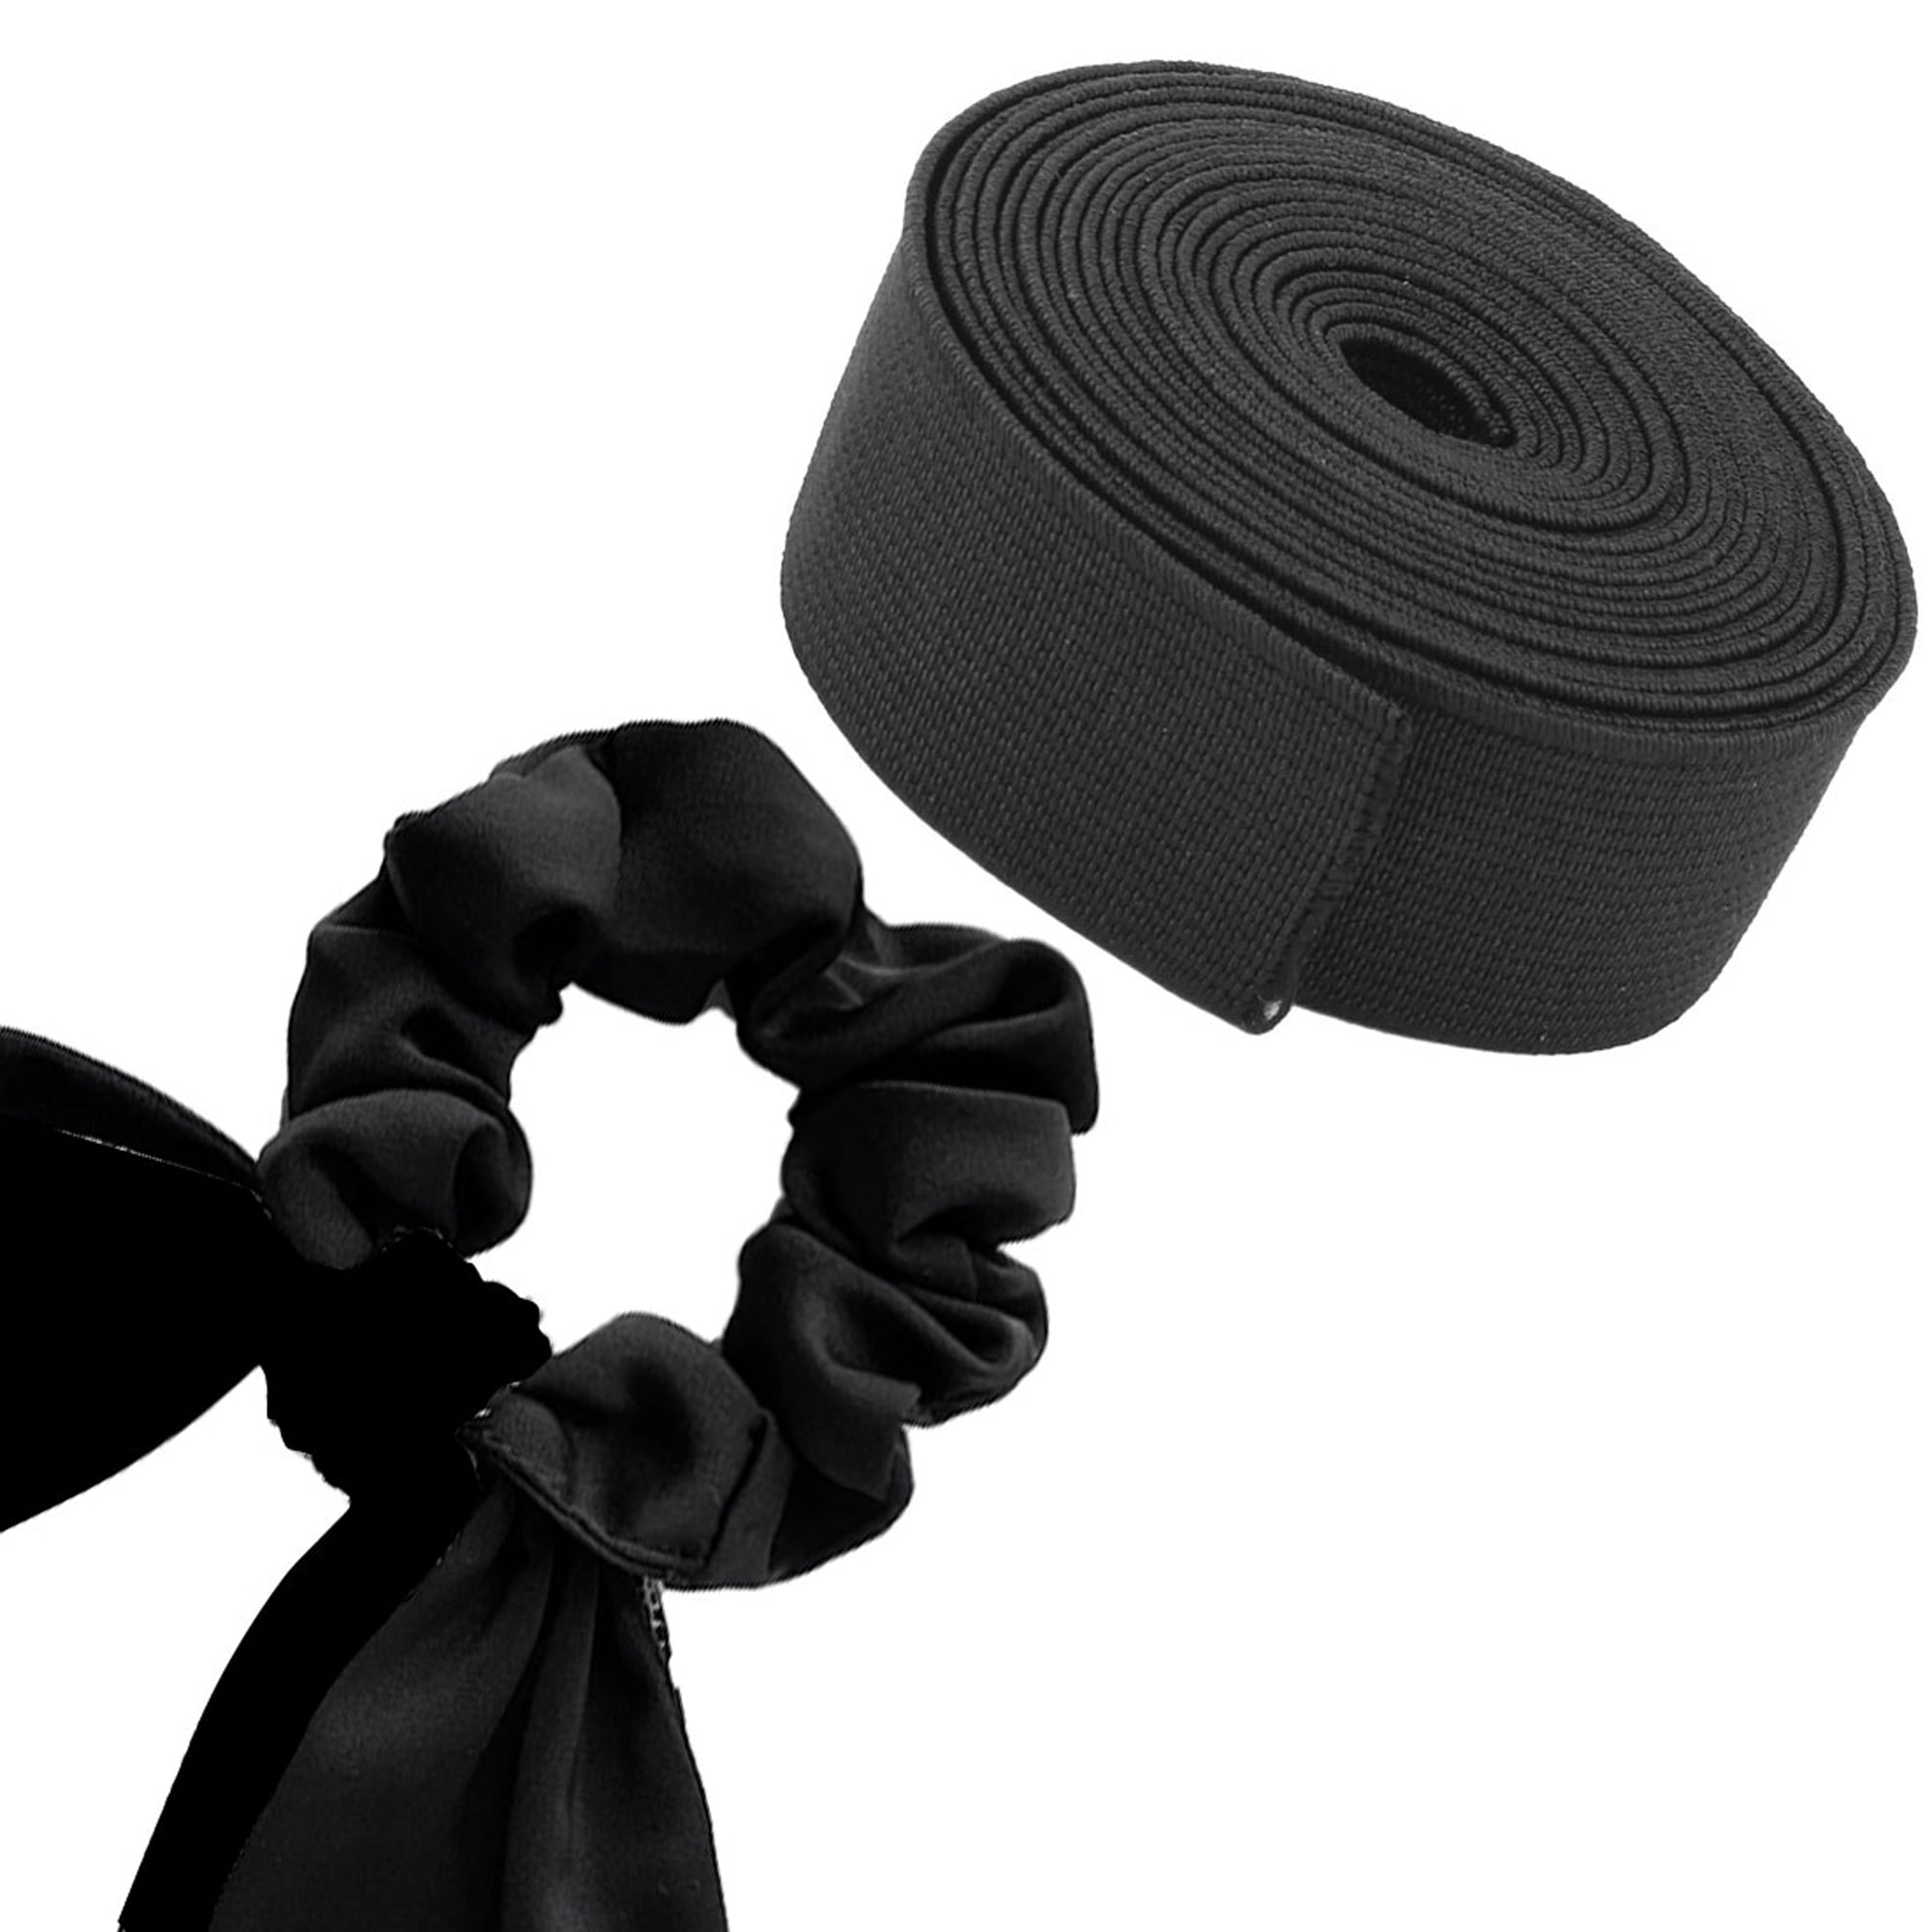 19 Black elastic band Length 140 mm, Width 10 mm - elasticmaterials